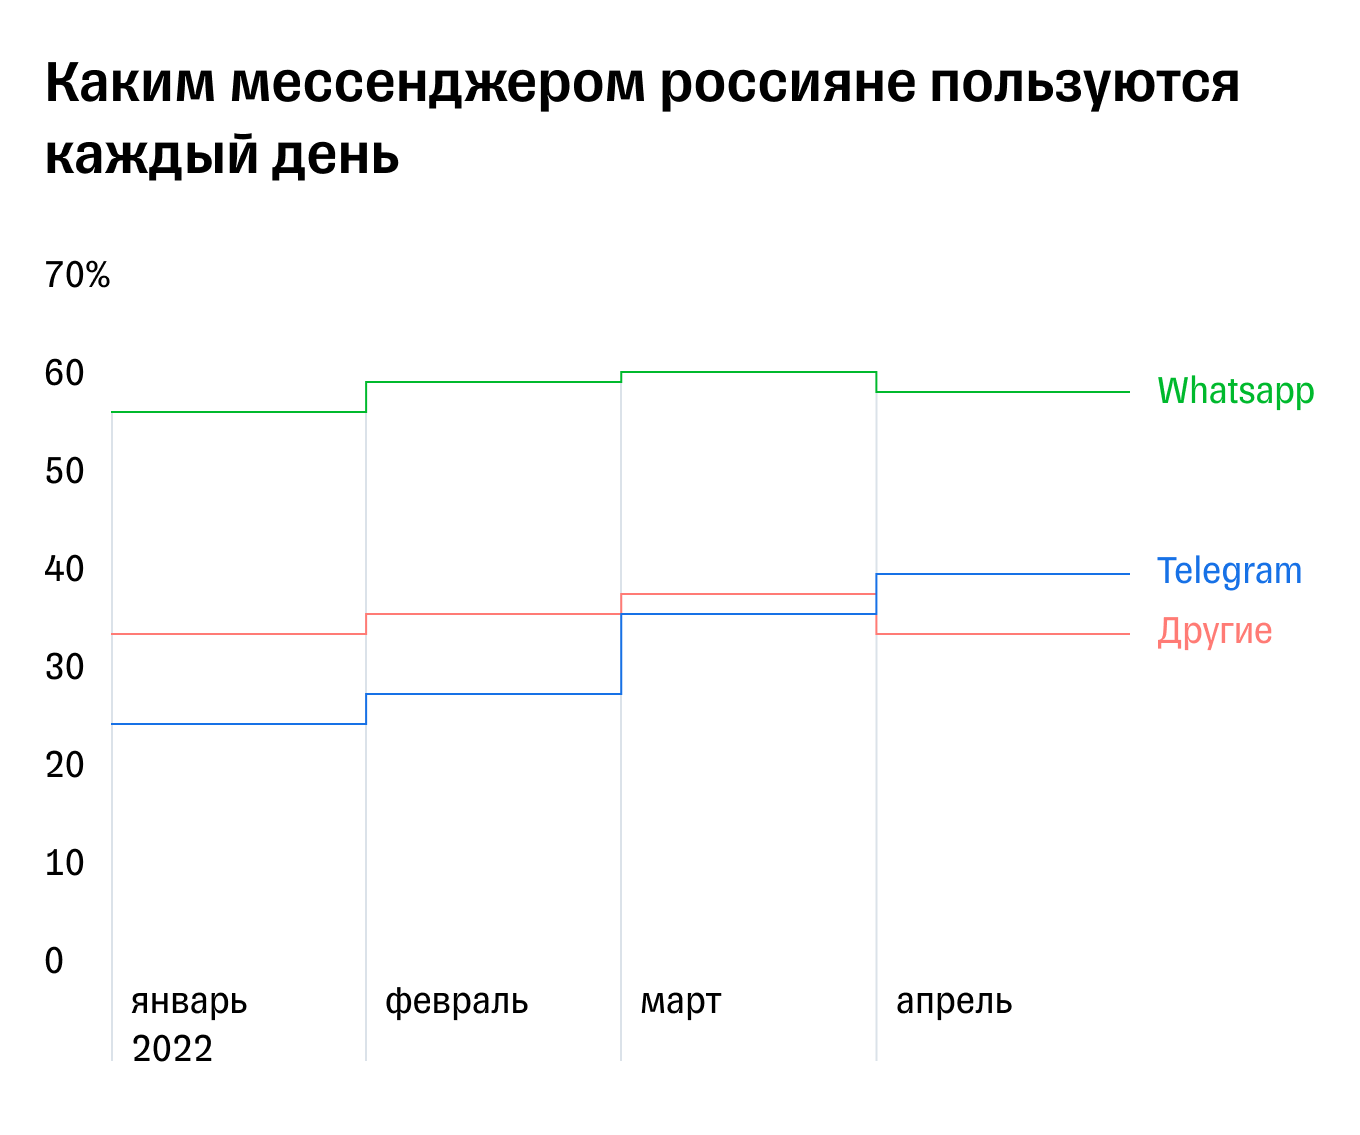 Аудитория WhatsApp: сравнение по охватам с Telegram и другими мессенджерами